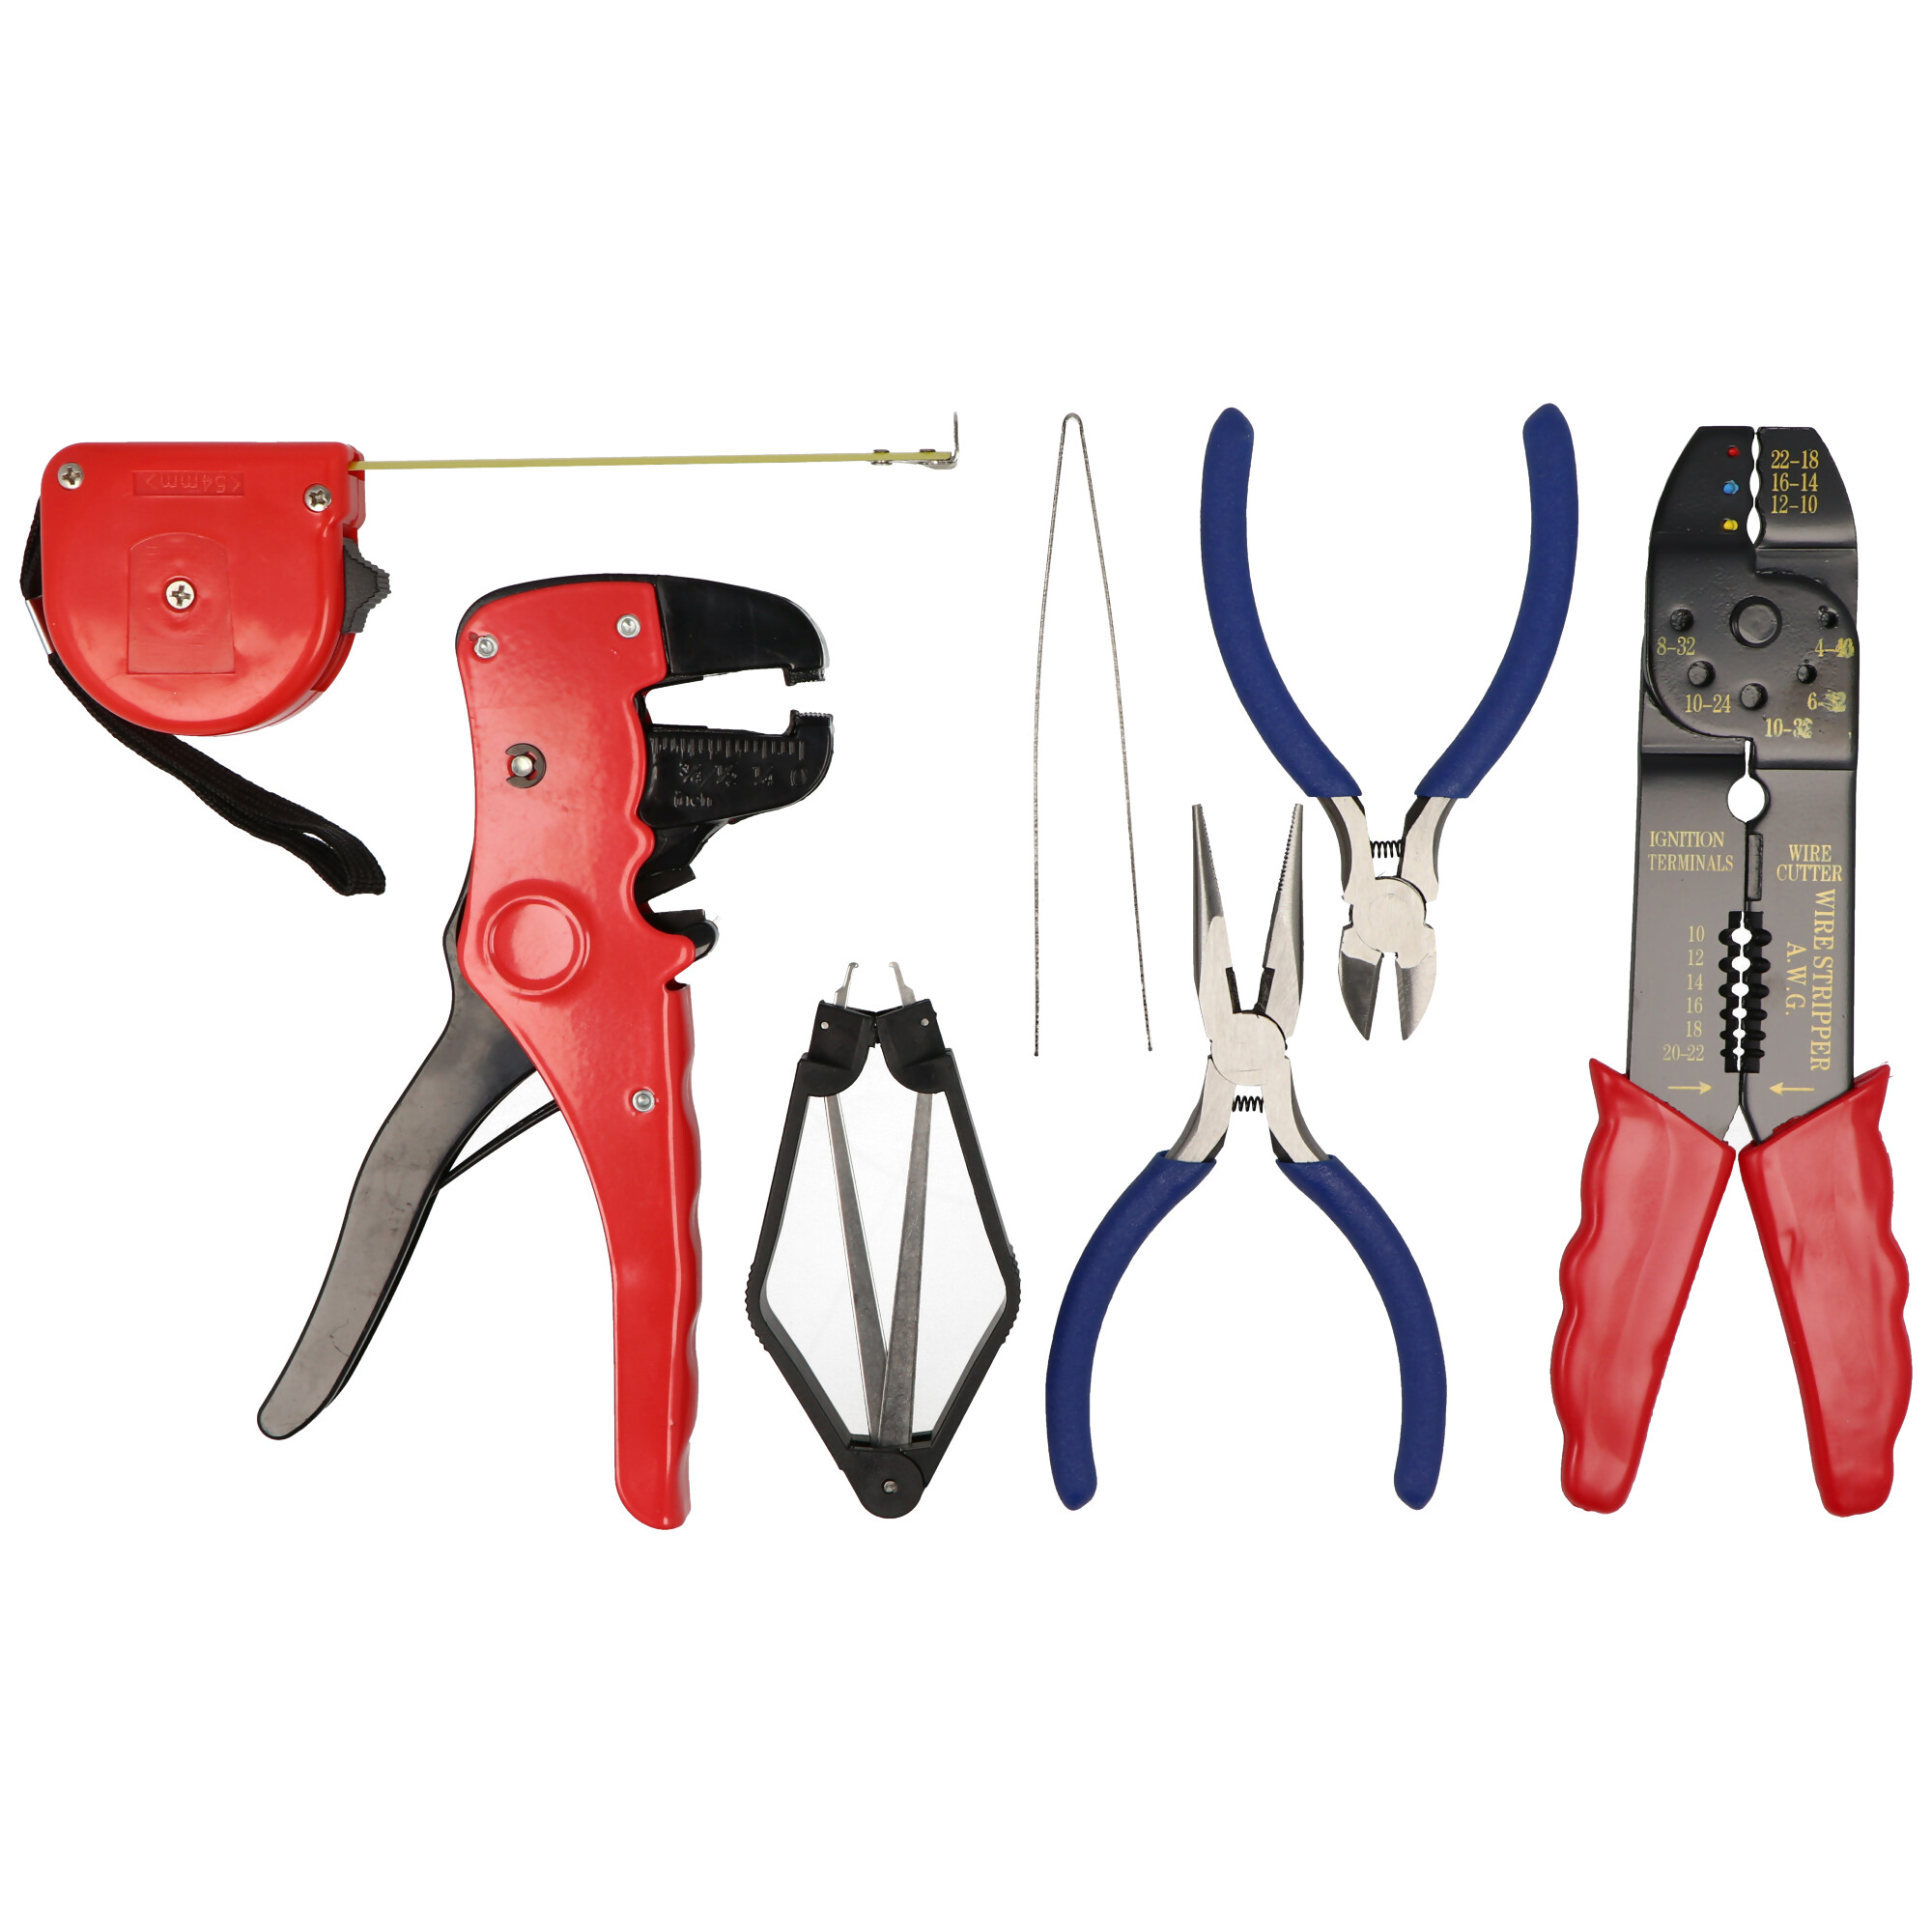 20-teiliges Werkzeugset in praktischer Aufbewahrungstasche, Werkzeugtasche inklusive Lötset